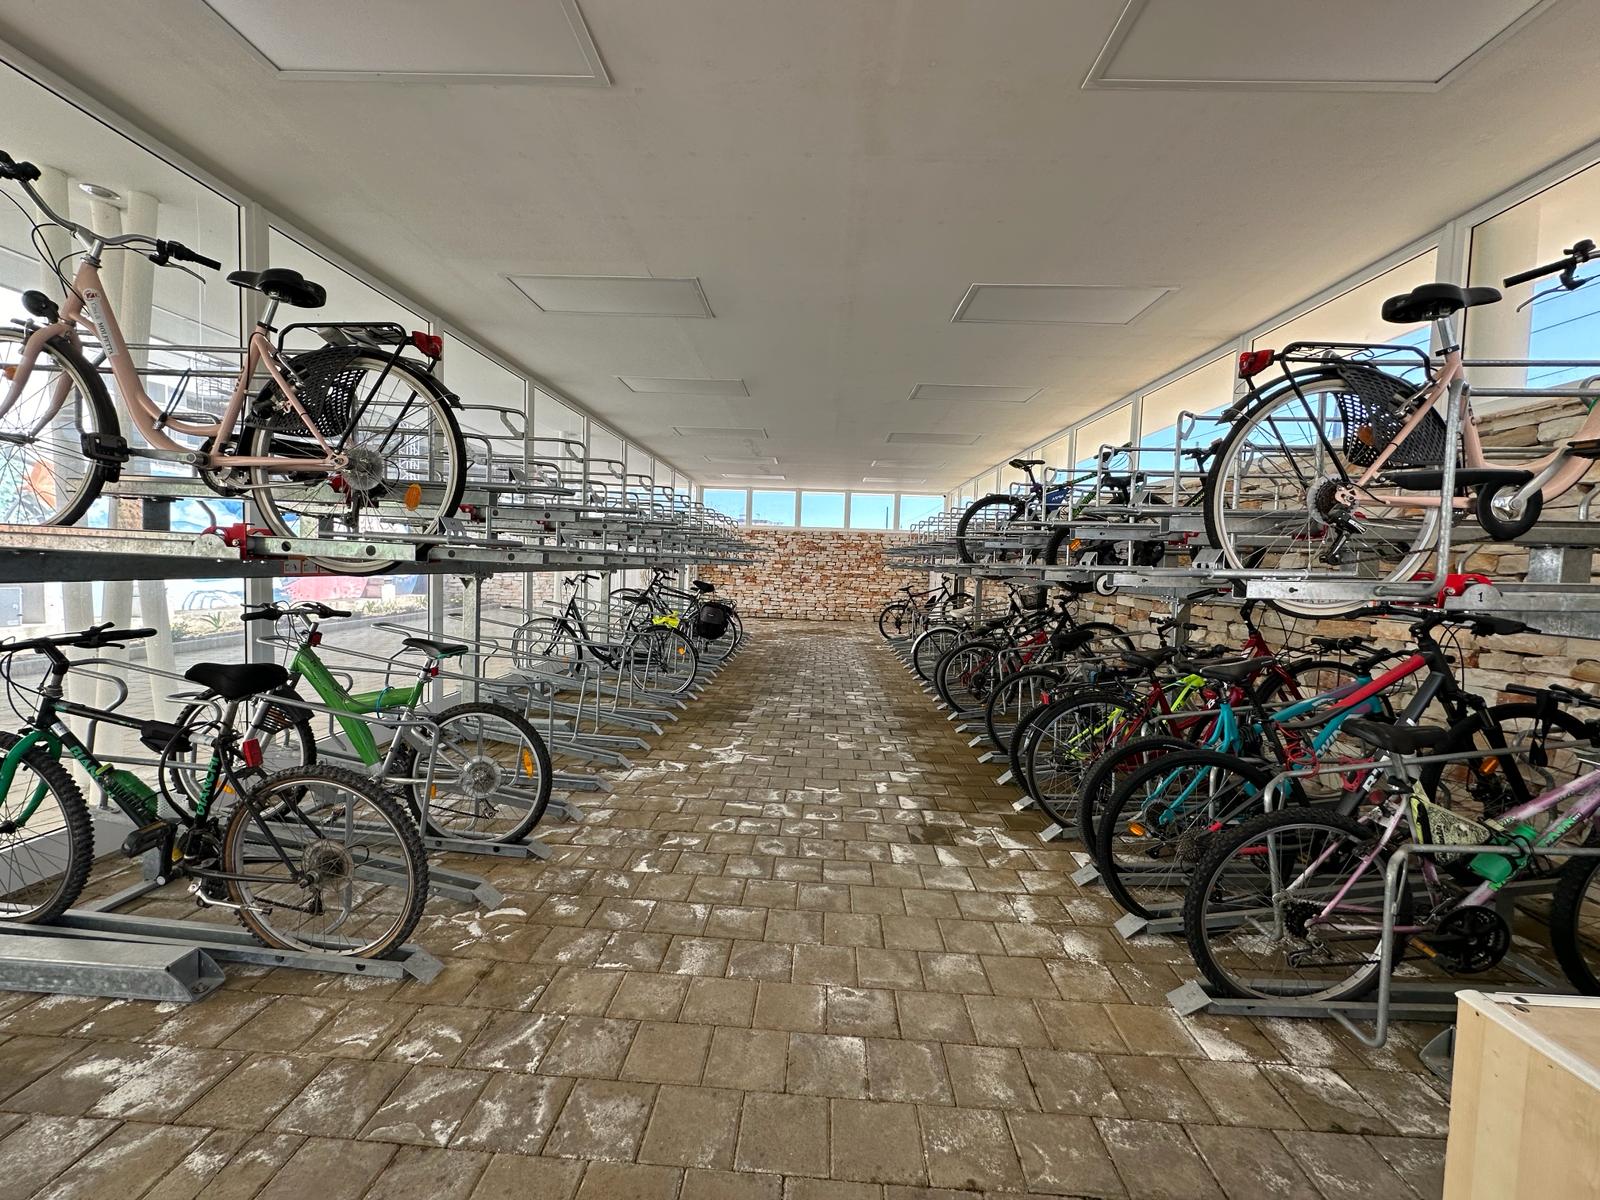 Galleria Mobilità sostenibile, Maurodinoia inaugura il nuovo servizio di bike sharing di Molfetta finanziato dalla Regione - Diapositiva 2 di 4